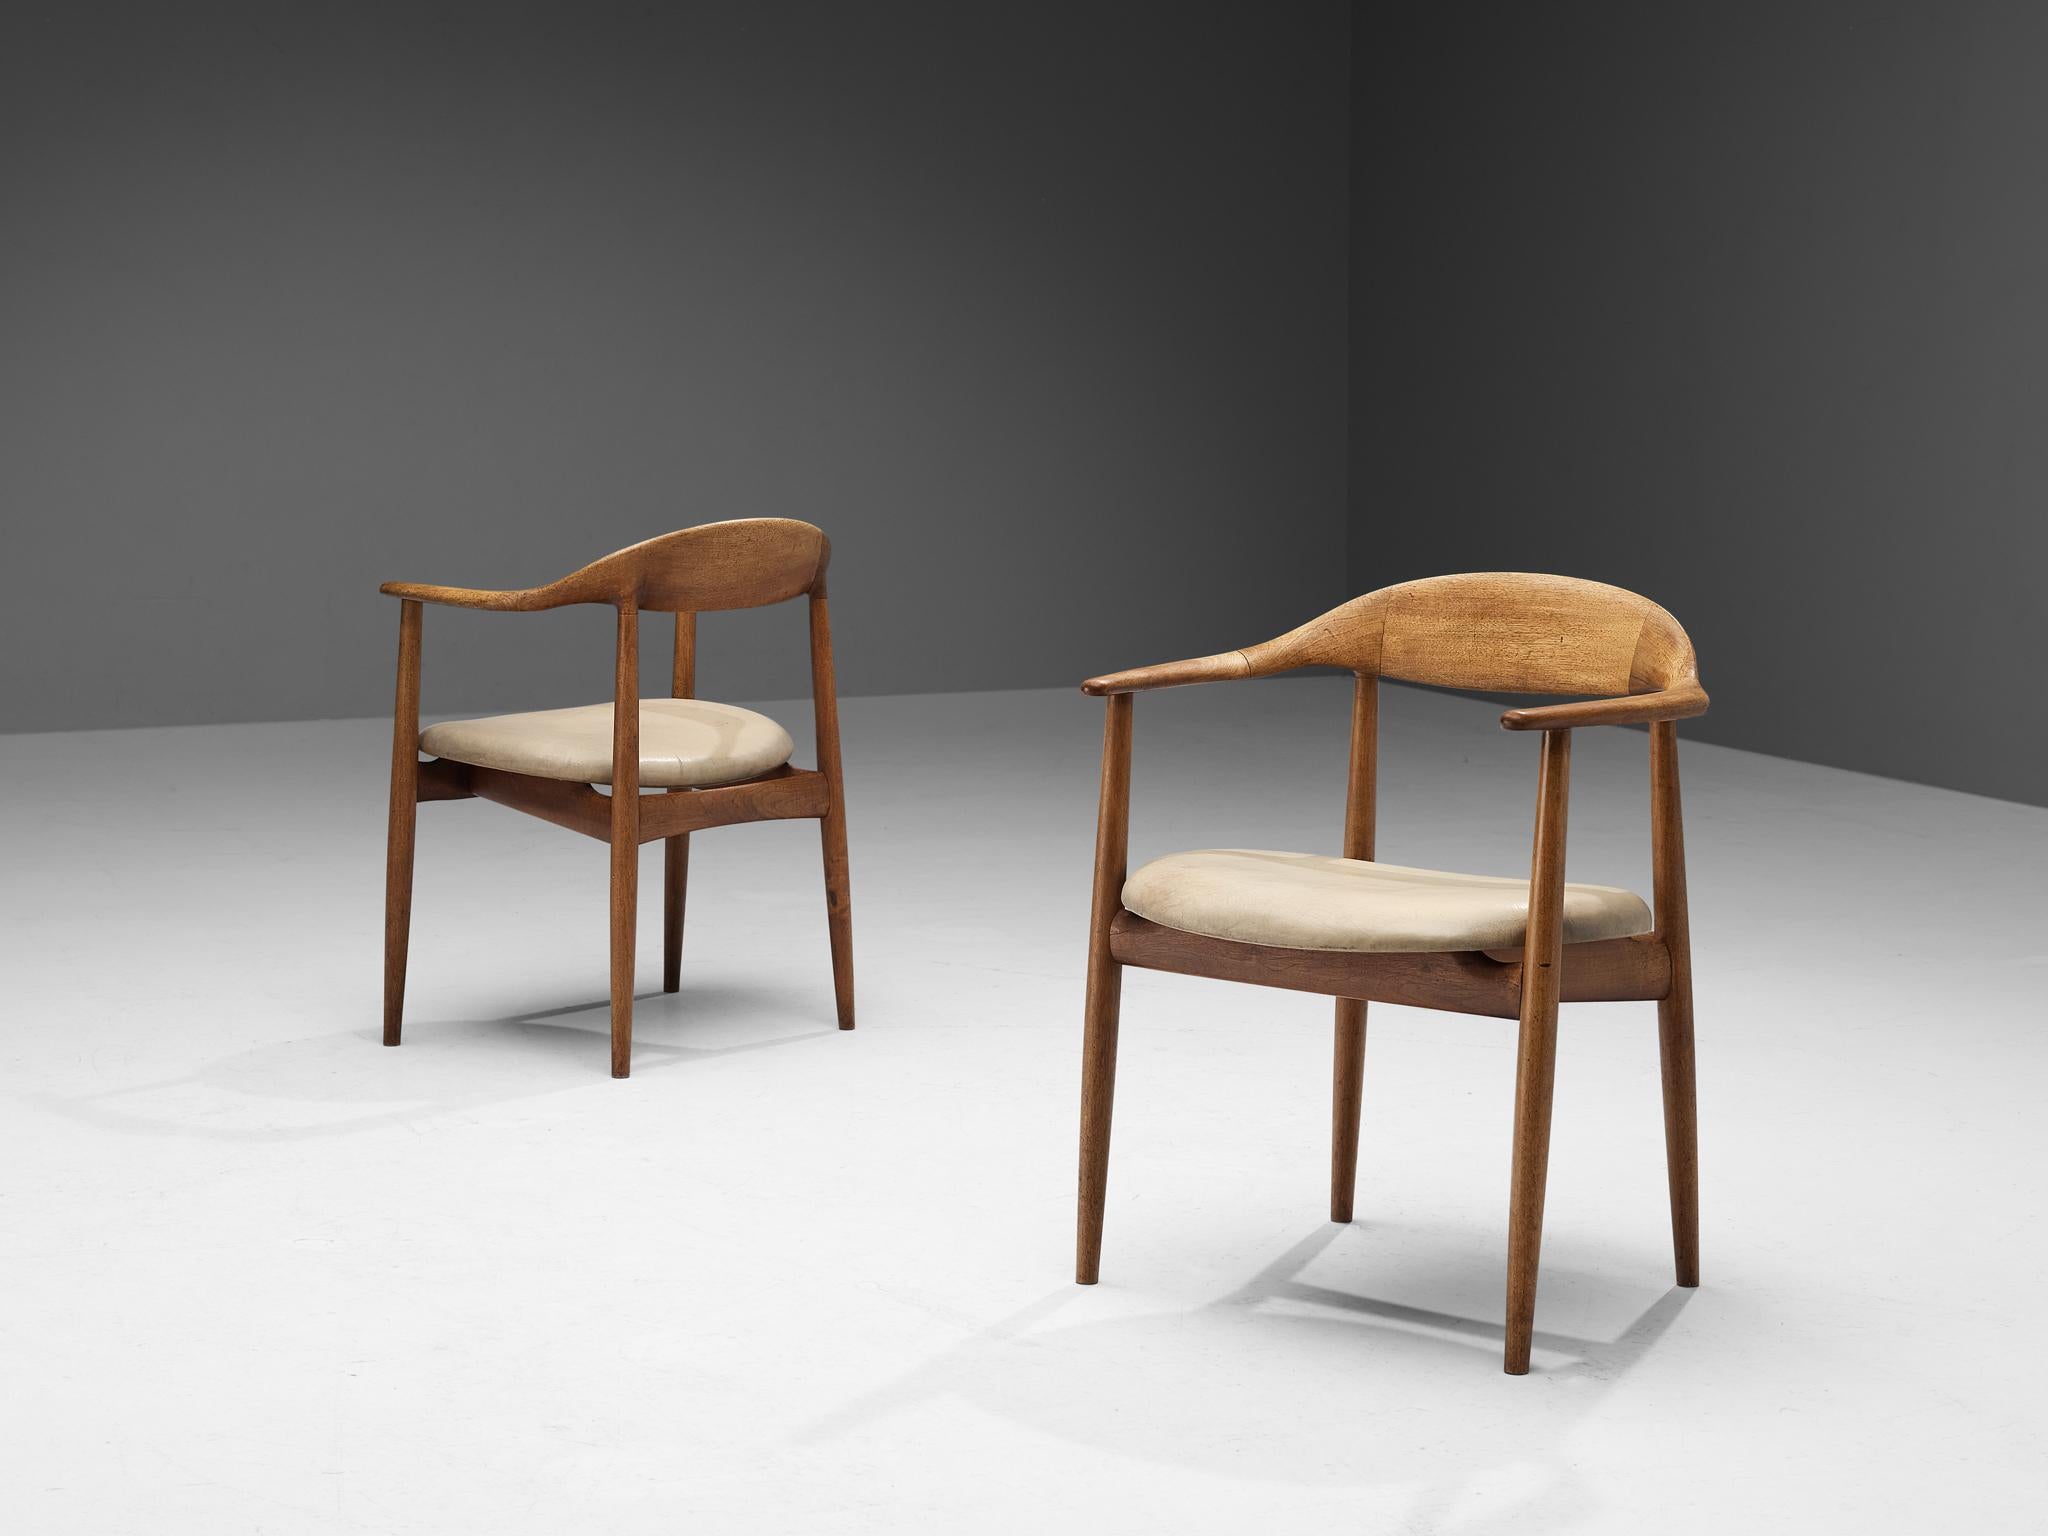 Kurt Østervig pour Brande Møbelindustri, paire de fauteuils modèle 27, teck, cuir, Danemark, années 1950.

Magnifique paire de chaises de salle à manger conçue par Kurt Østervig pour Brande Møbelindustri. Cette paire de fauteuils à l'aspect